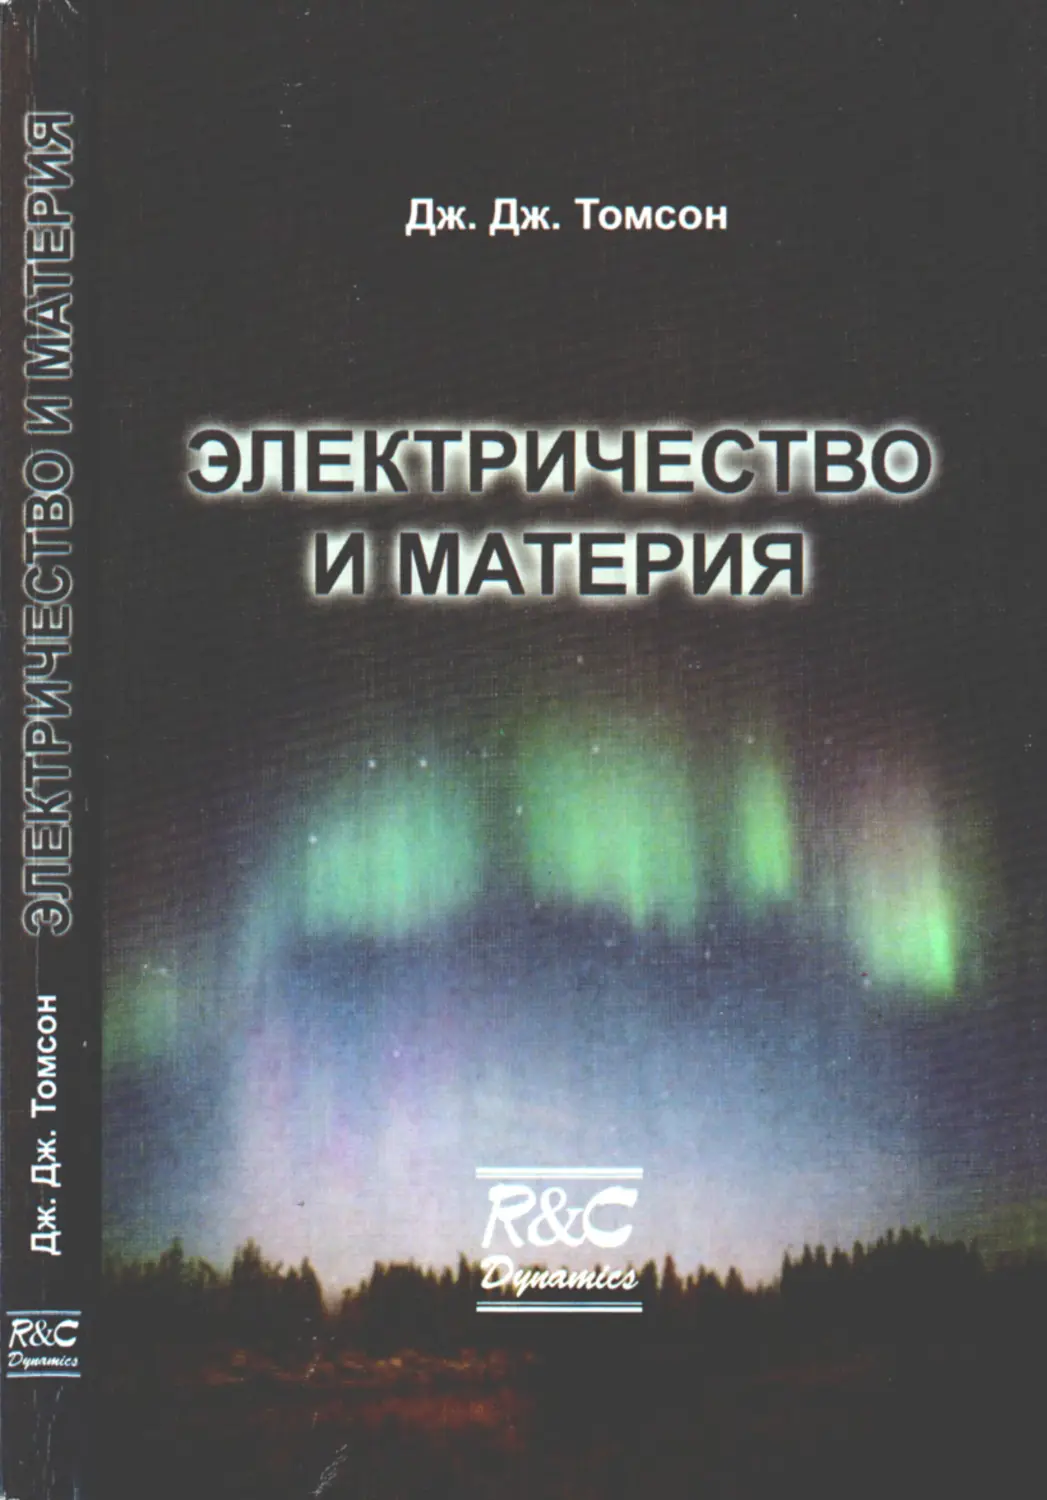 Электричество и материя - Томсон Д.Д. - 2004 